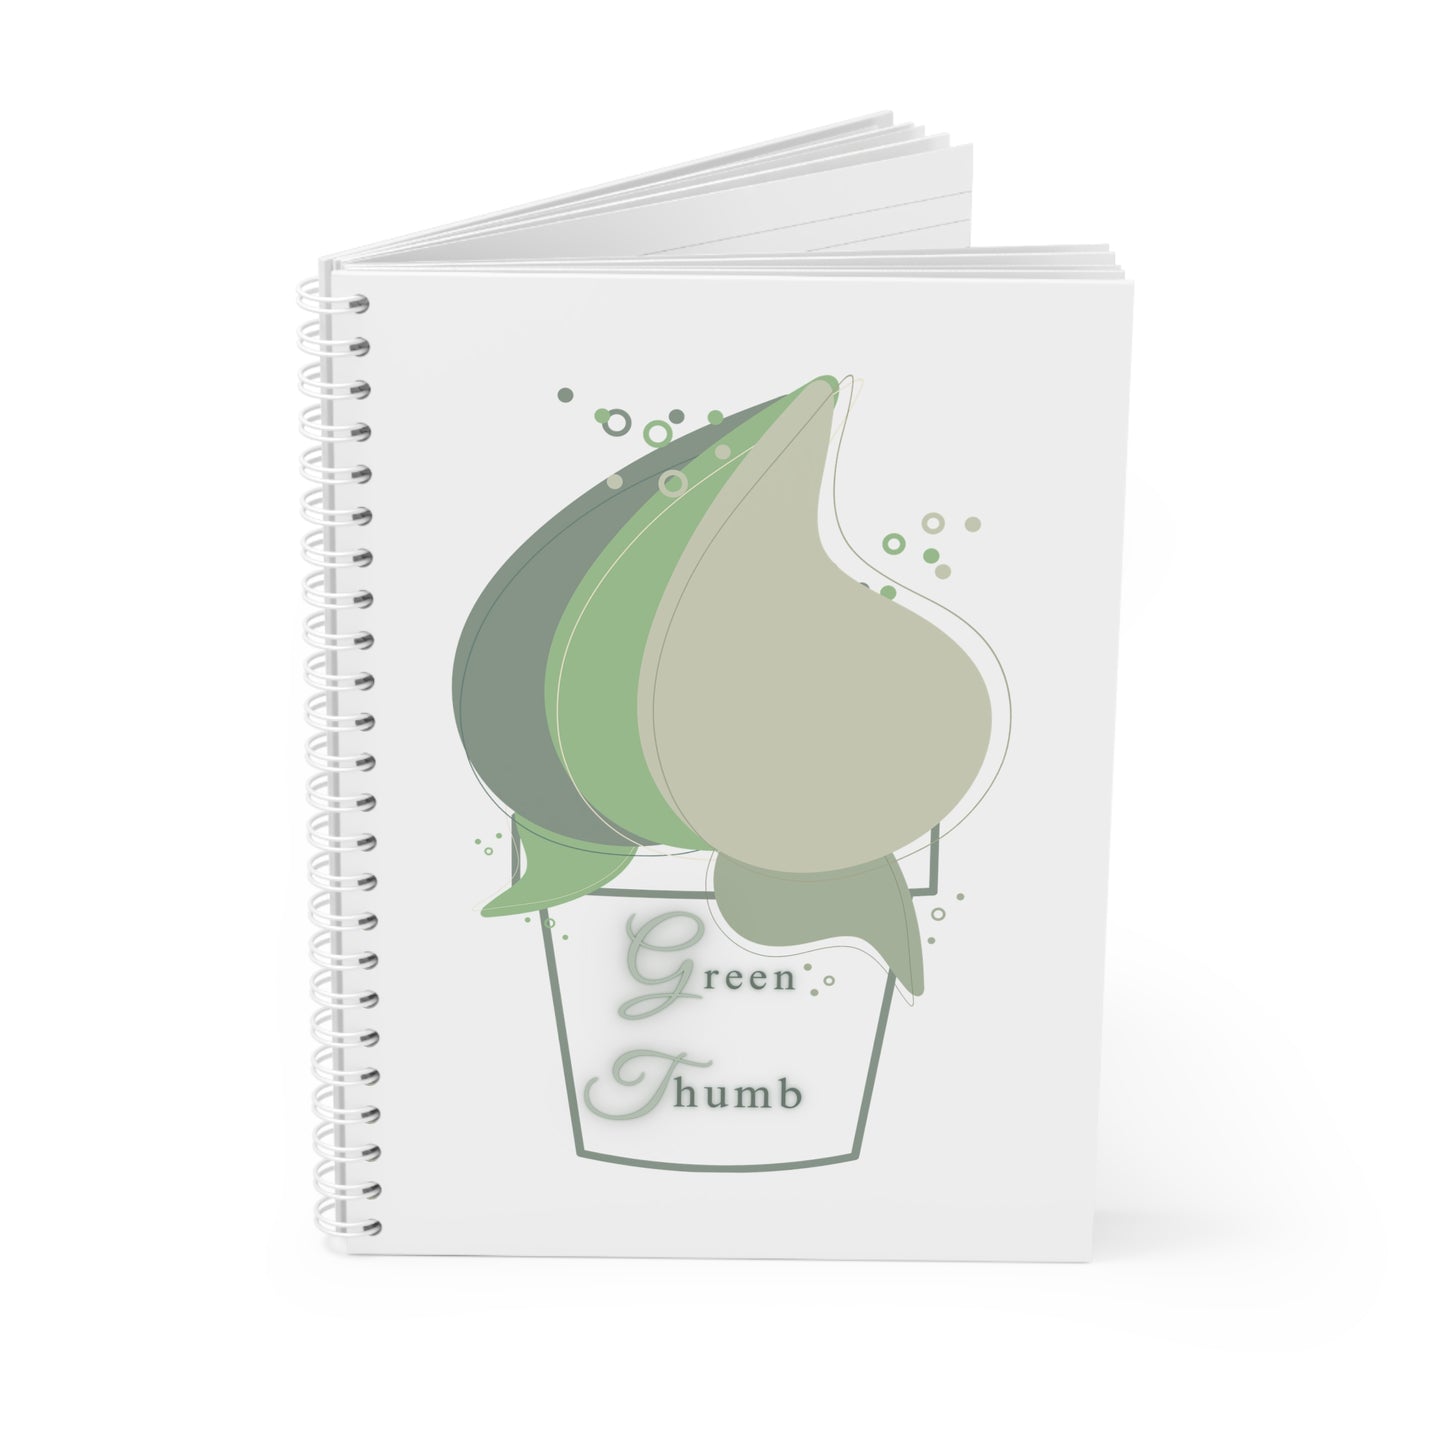 Green thumb Spiral Notebook